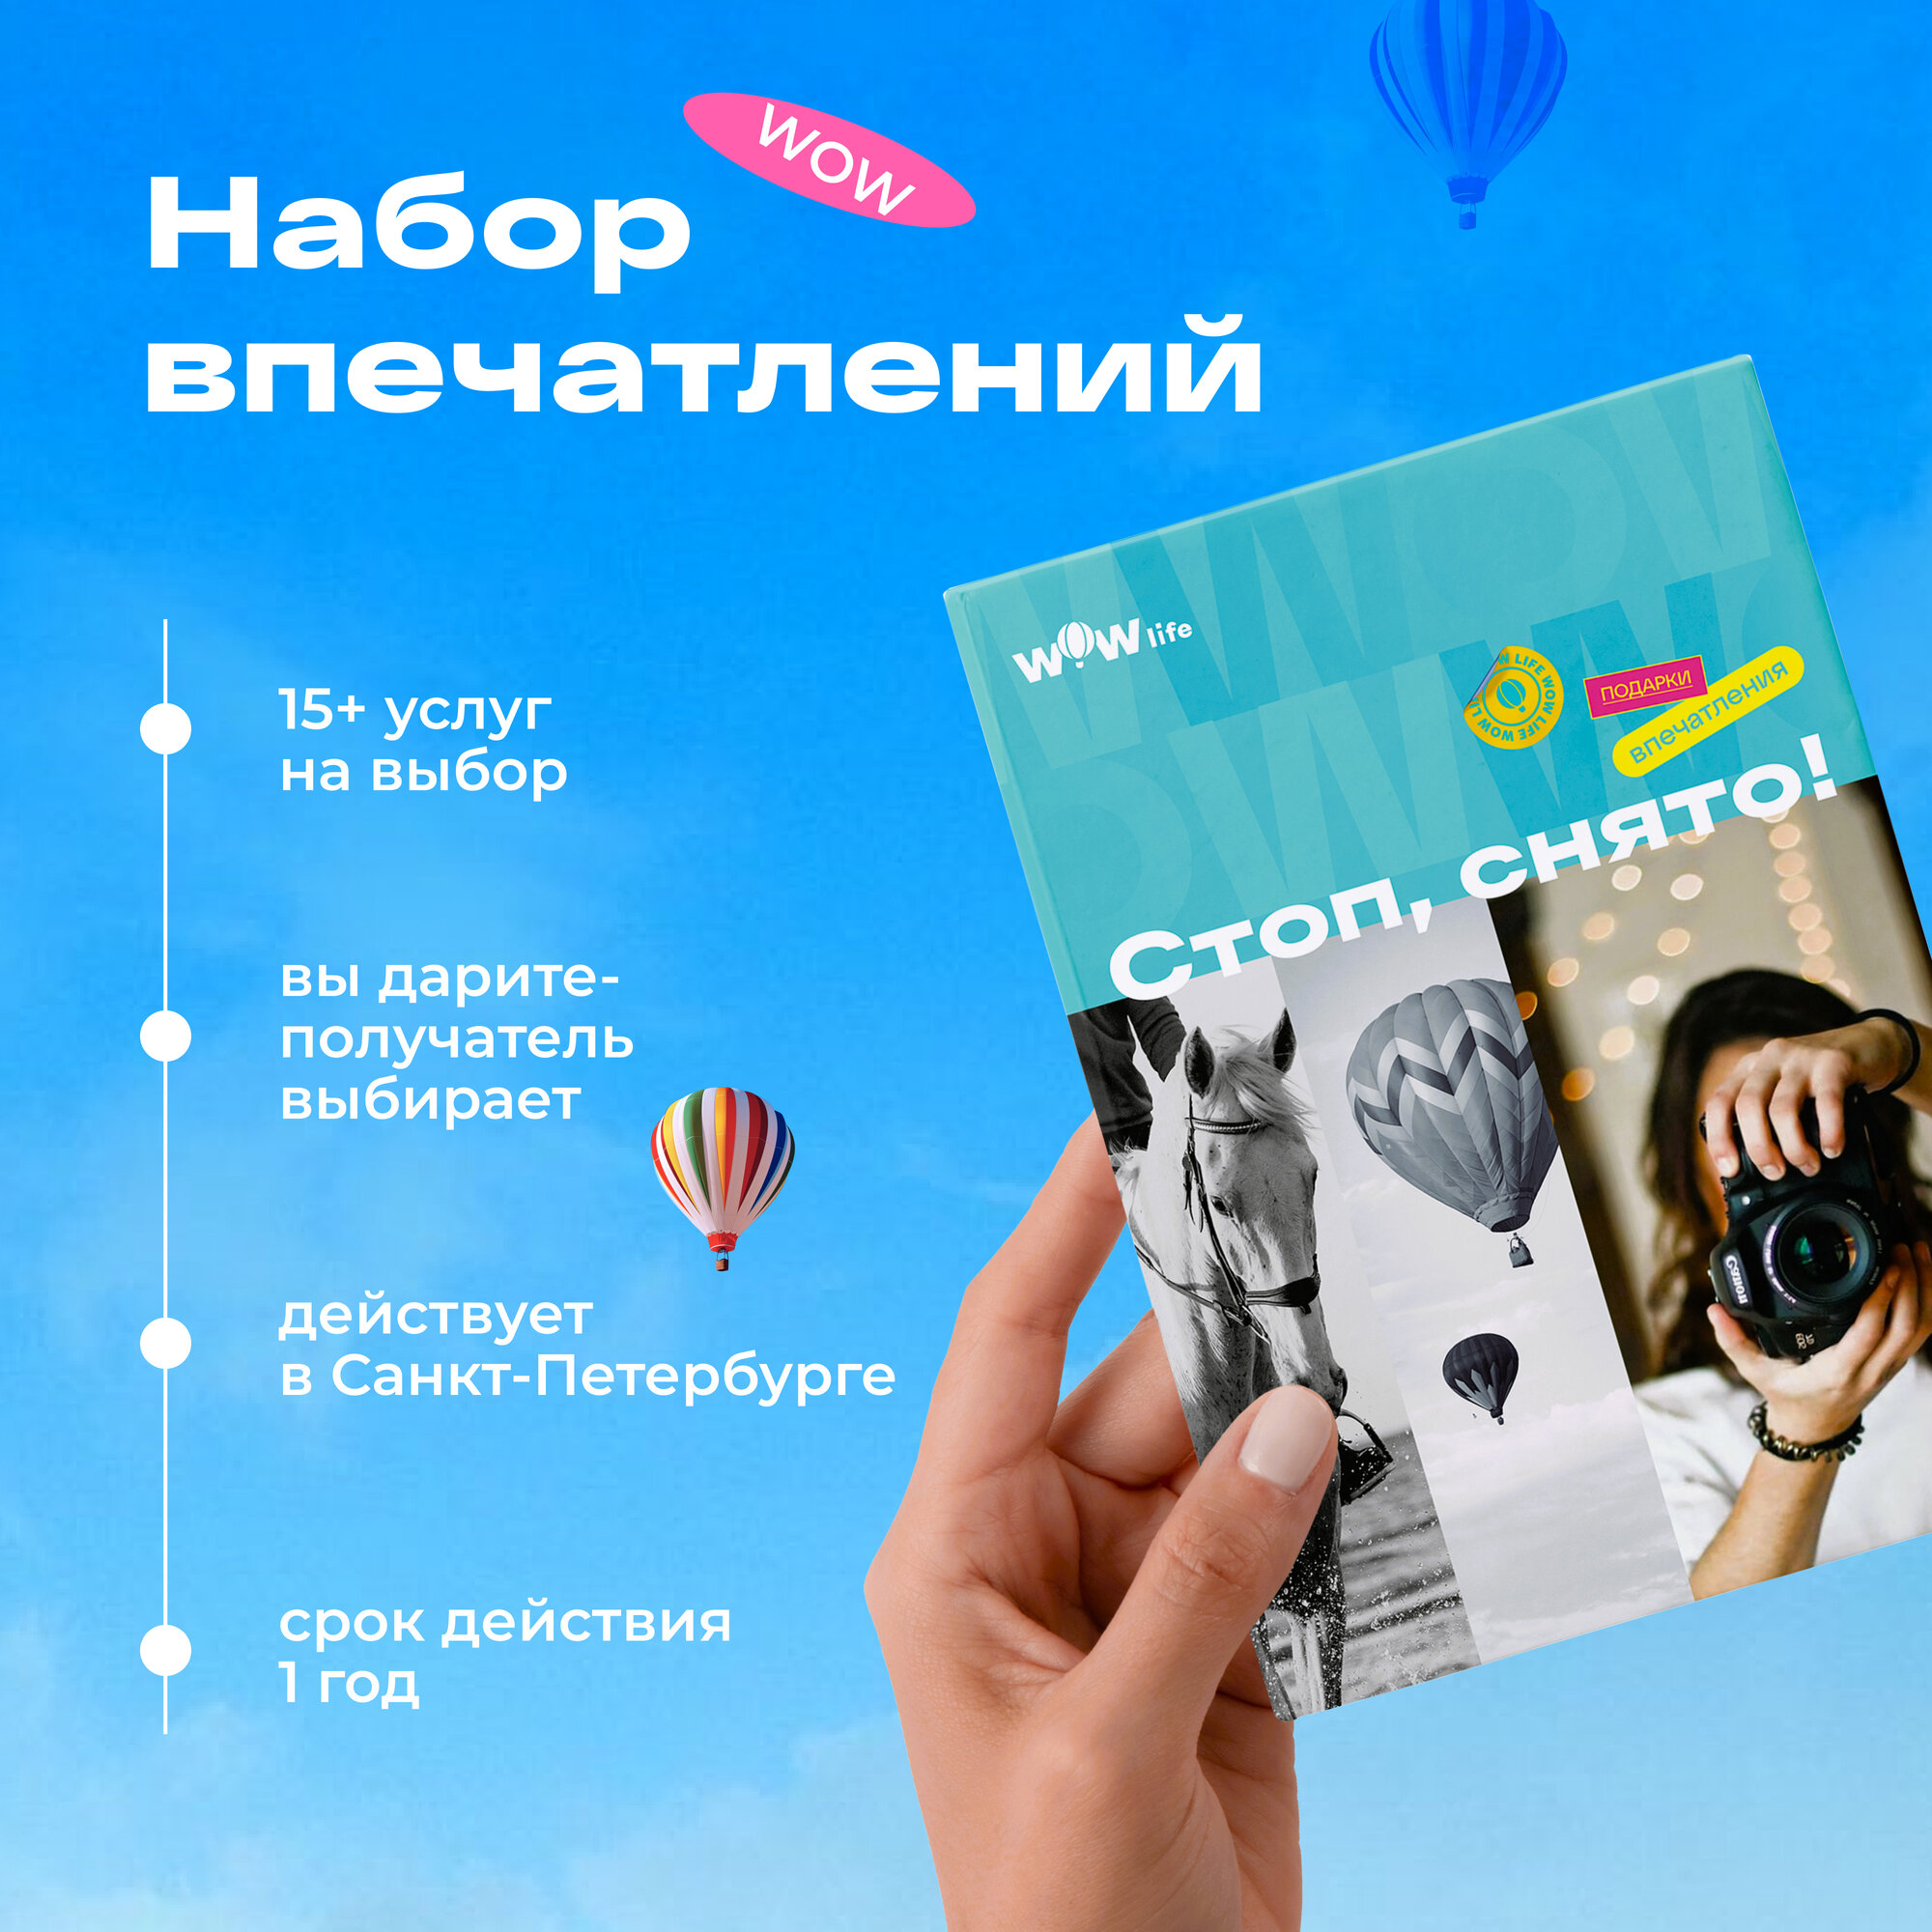 Подарочный сертификат WOWlife "Стоп, снято!" - набор из впечатлений на выбор, Санкт-Петербург